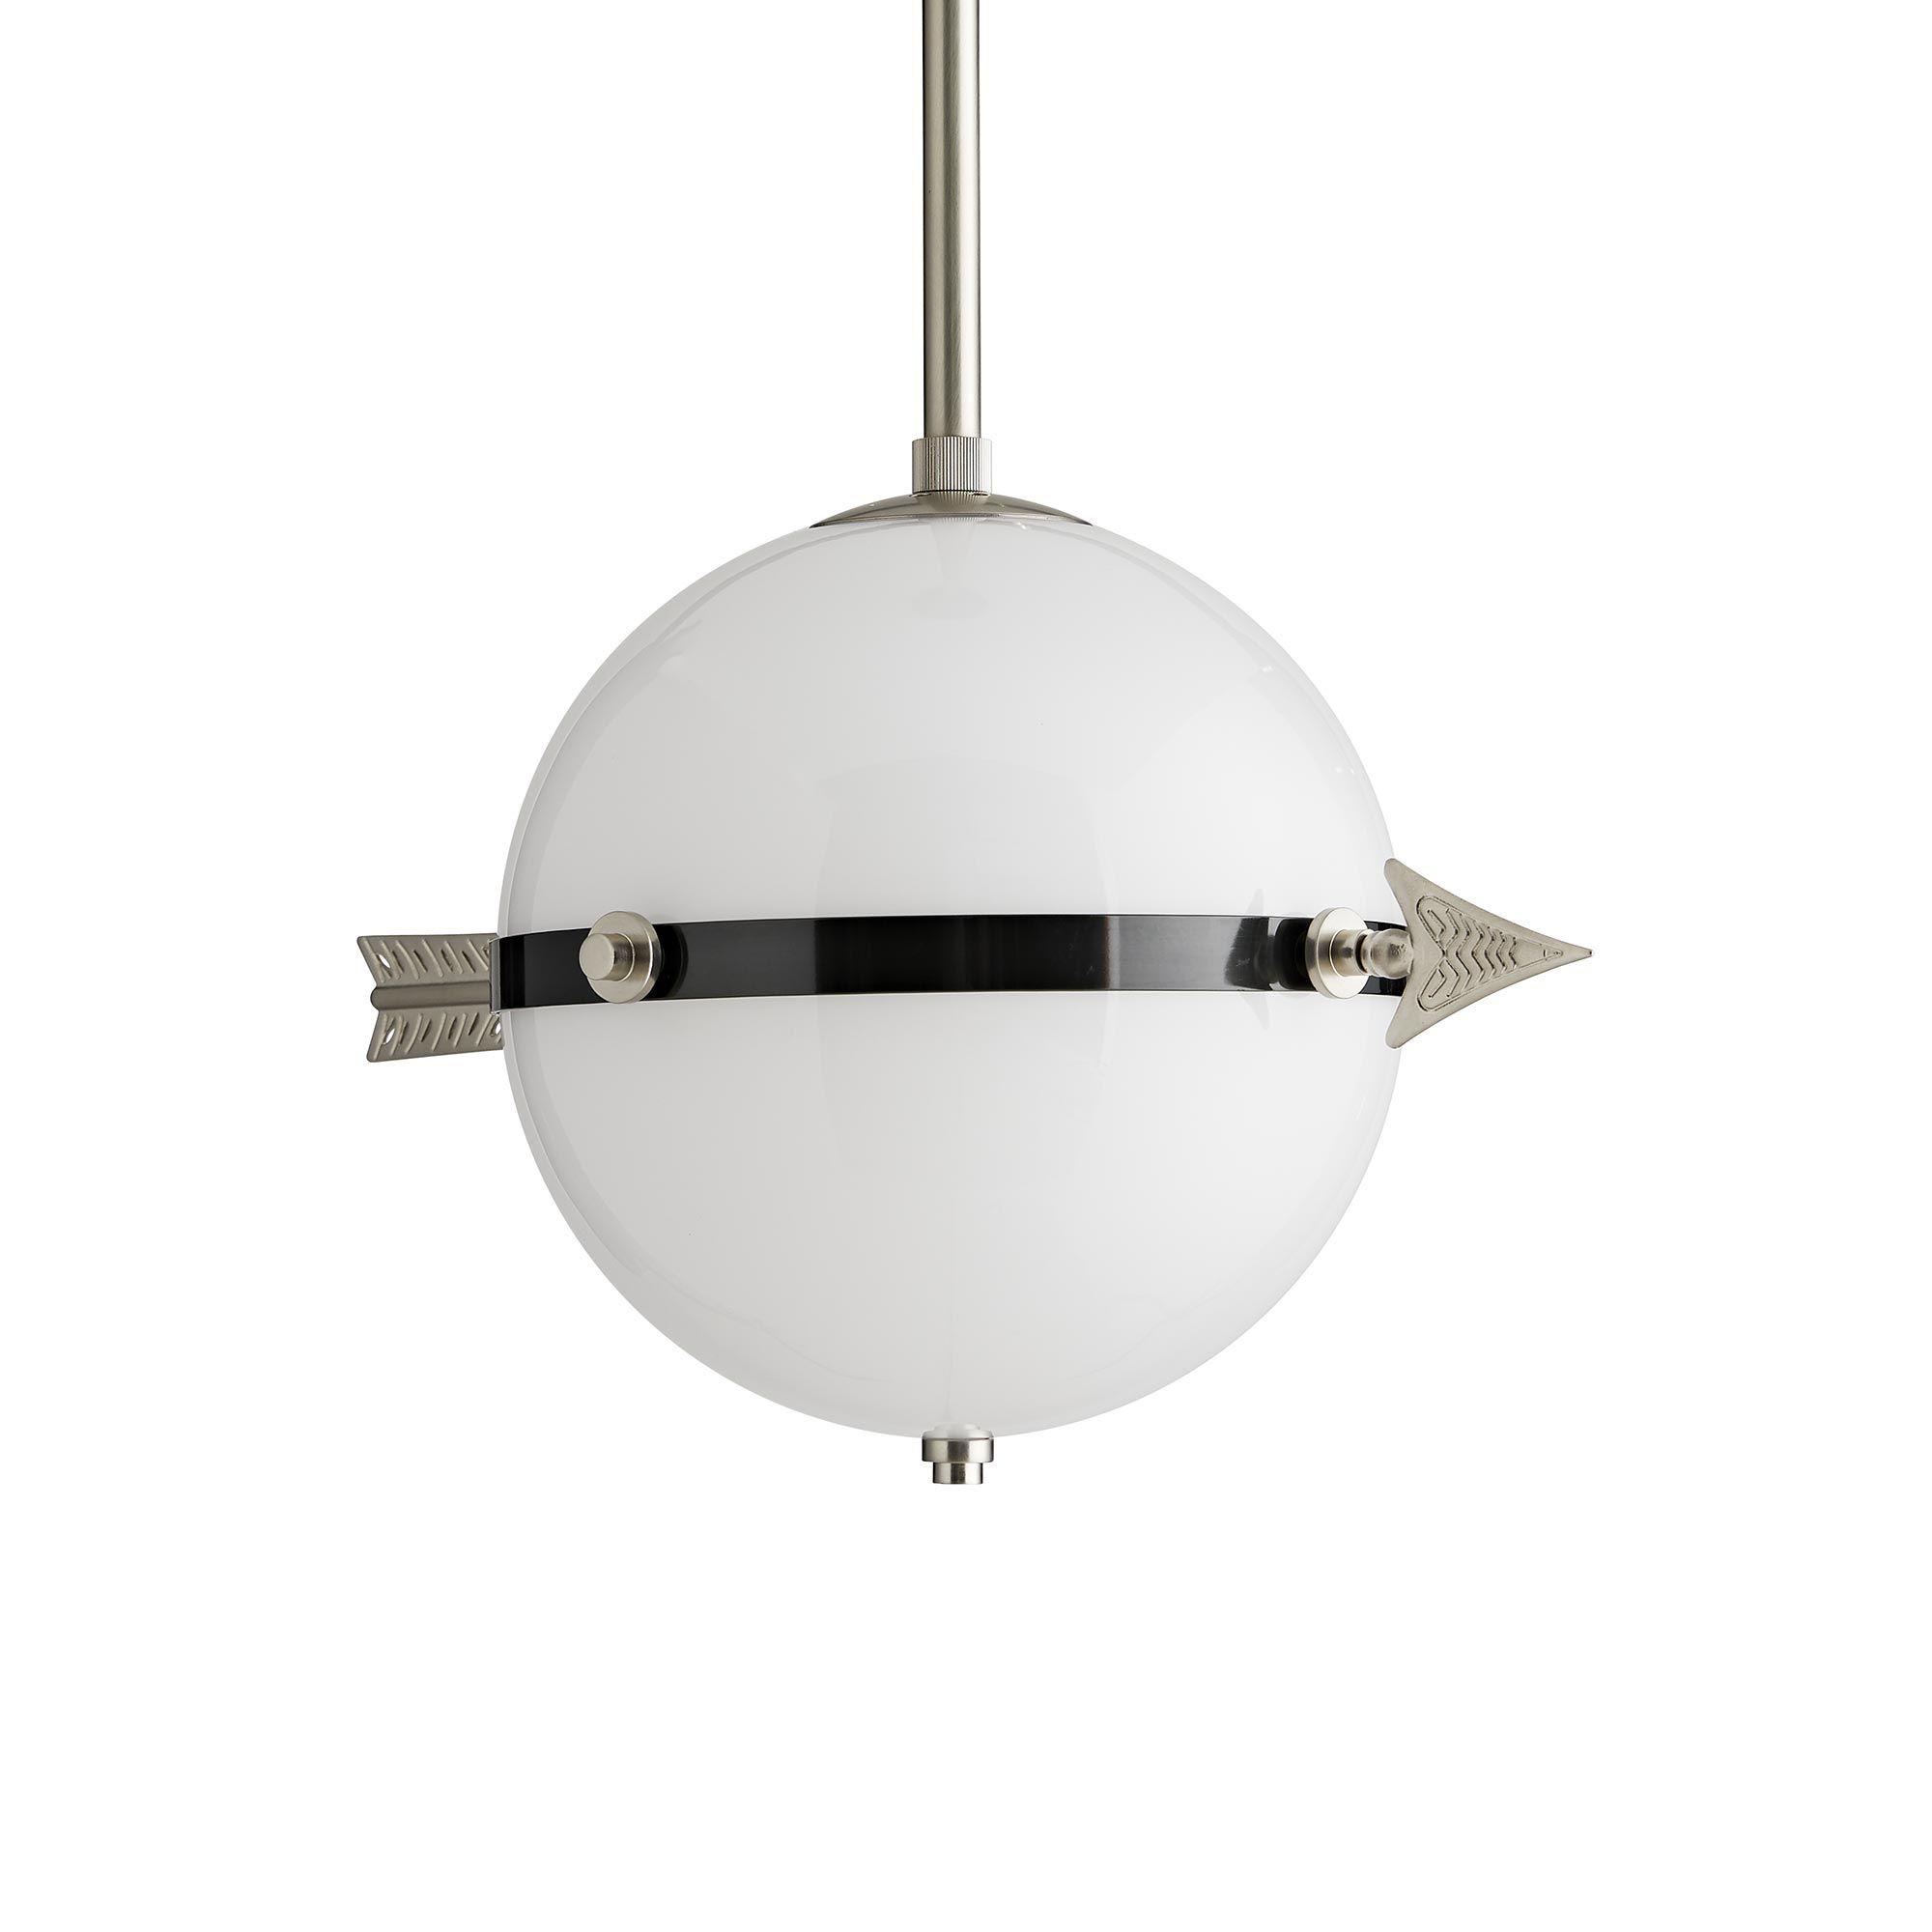 Купить Подвесной светильник Celestial Pendant в интернет-магазине roooms.ru